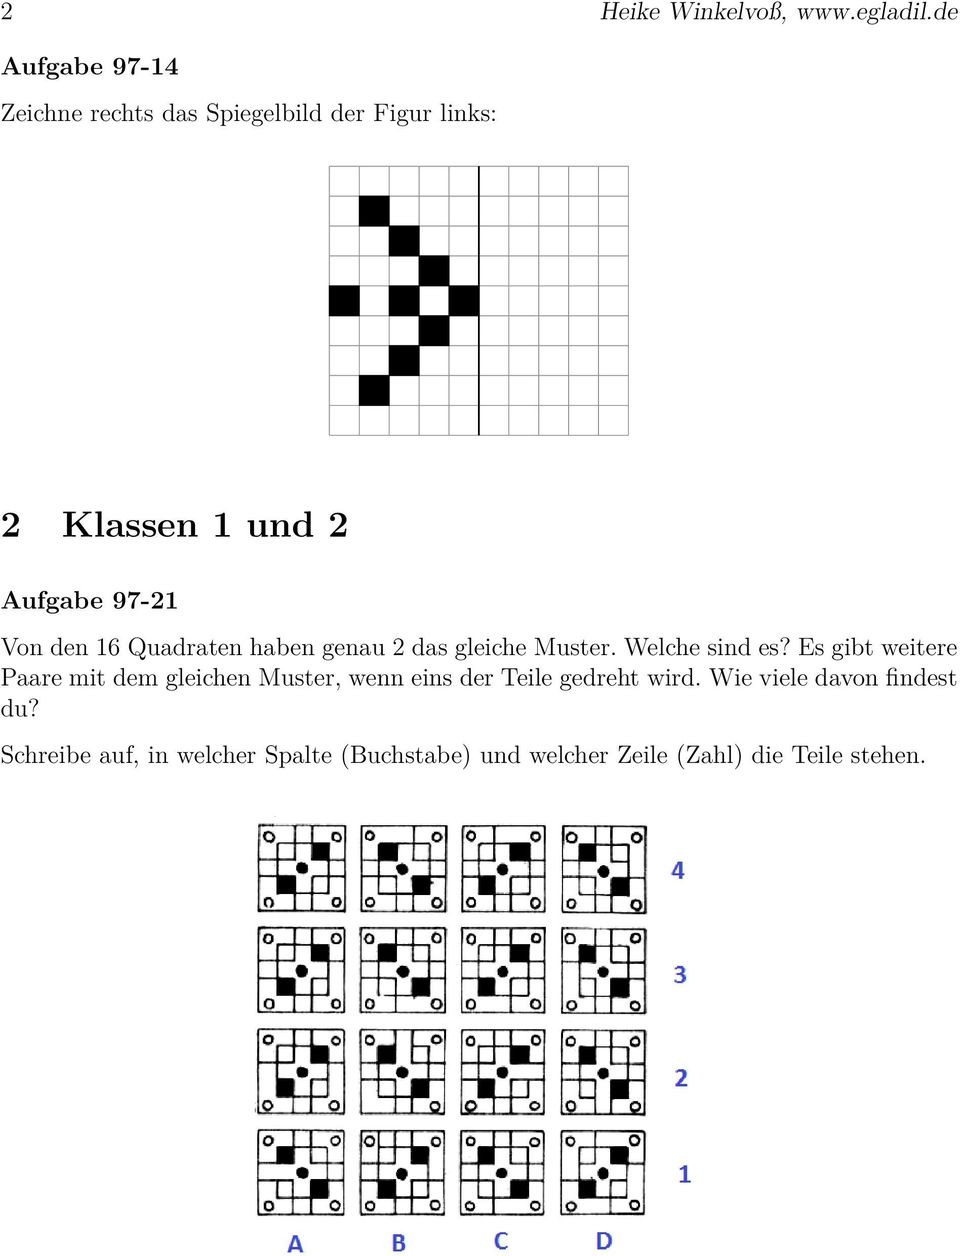 Von den 16 Quadraten haben genau 2 das gleiche Muster. Welche sind es?